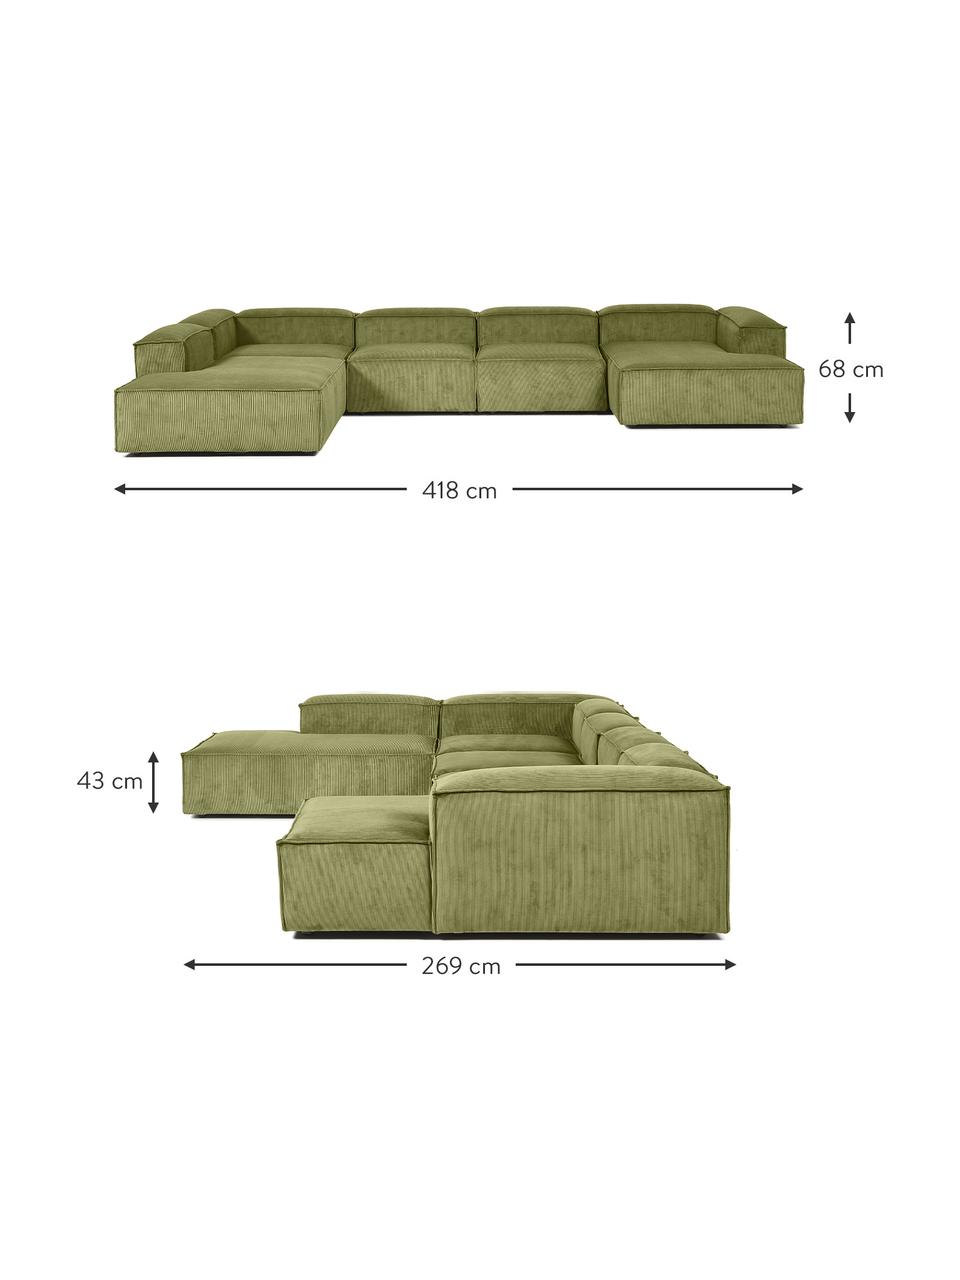 Canapé lounge modulable velours côtelé vert Lennon, Velours côtelé vert, larg. 418 x prof. 68 cm, méridienne à gauche